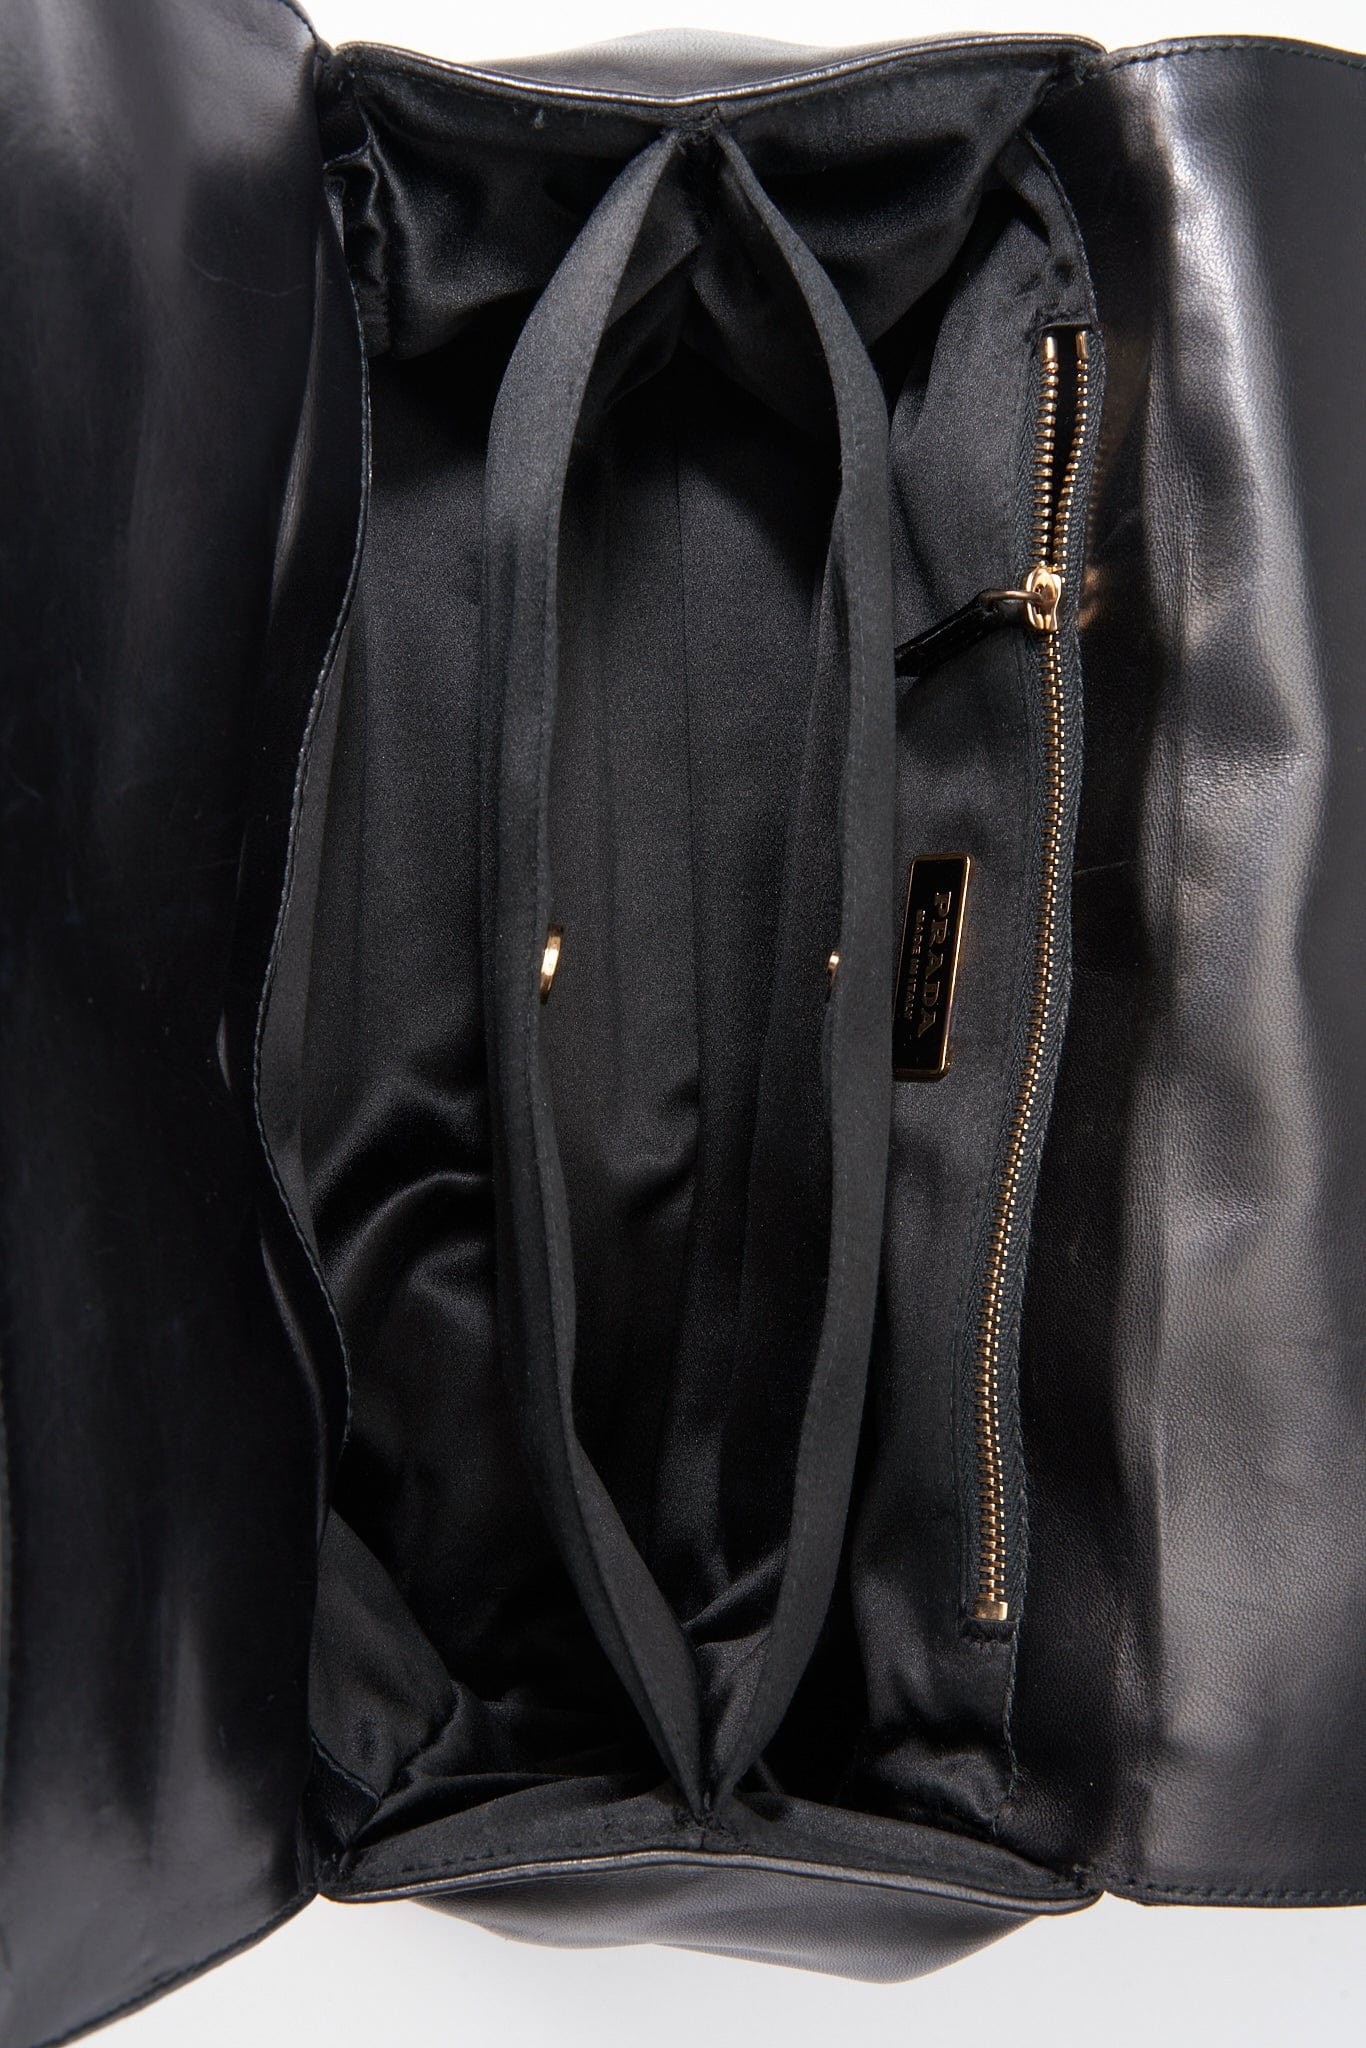 Prada Black Leather Shoulder Bag 1819